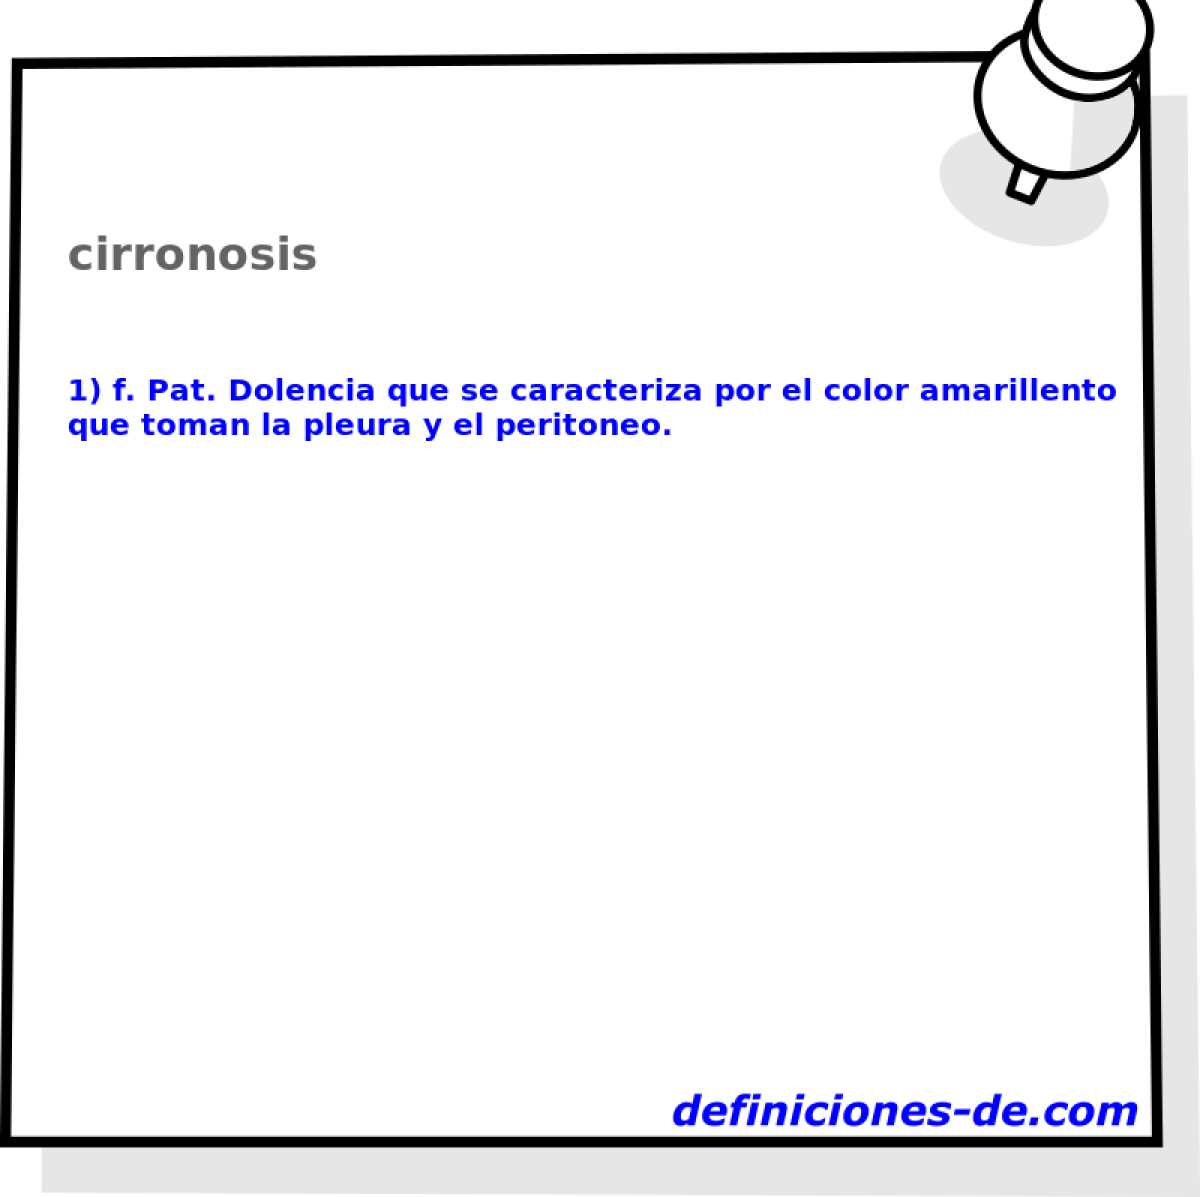 cirronosis 